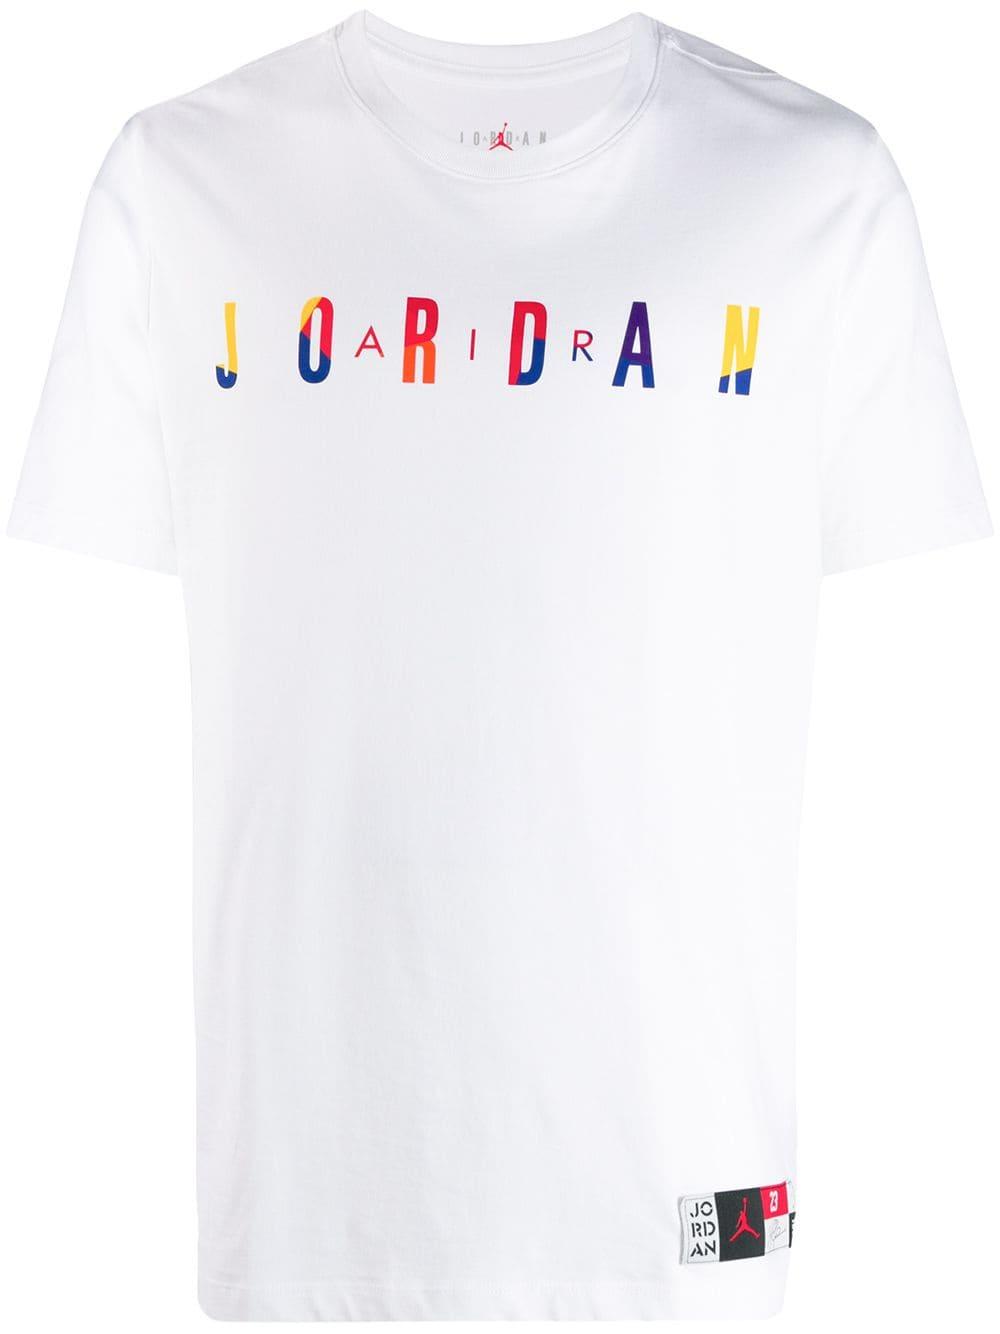 Nike Jordan Dna T-shirt in White for Men - Lyst